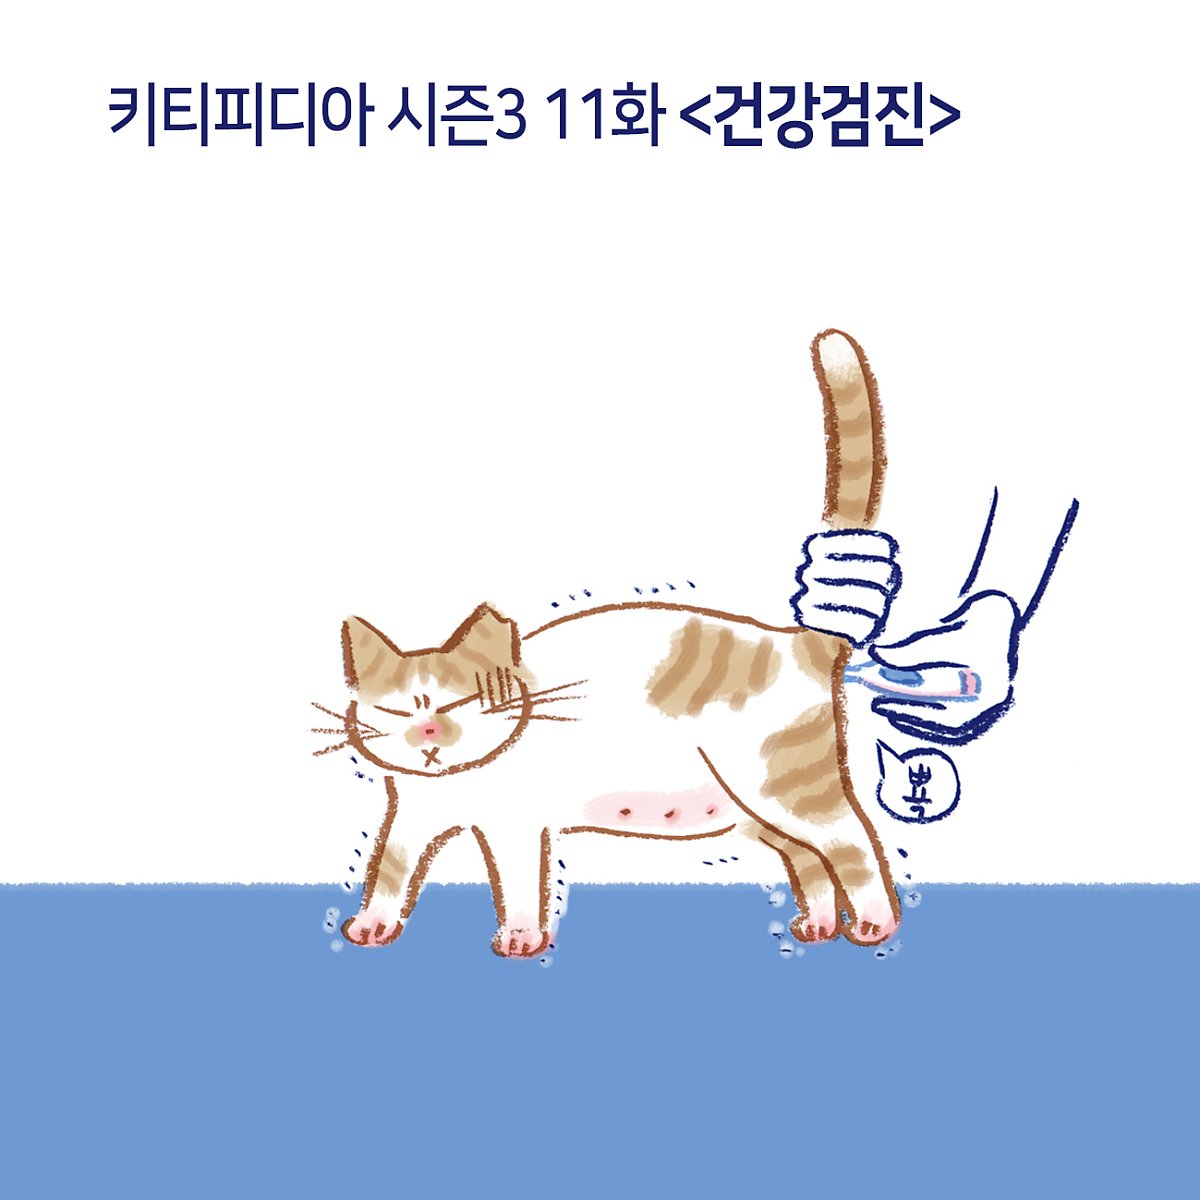 11.고양이 건강검진 : 네이버 포스트